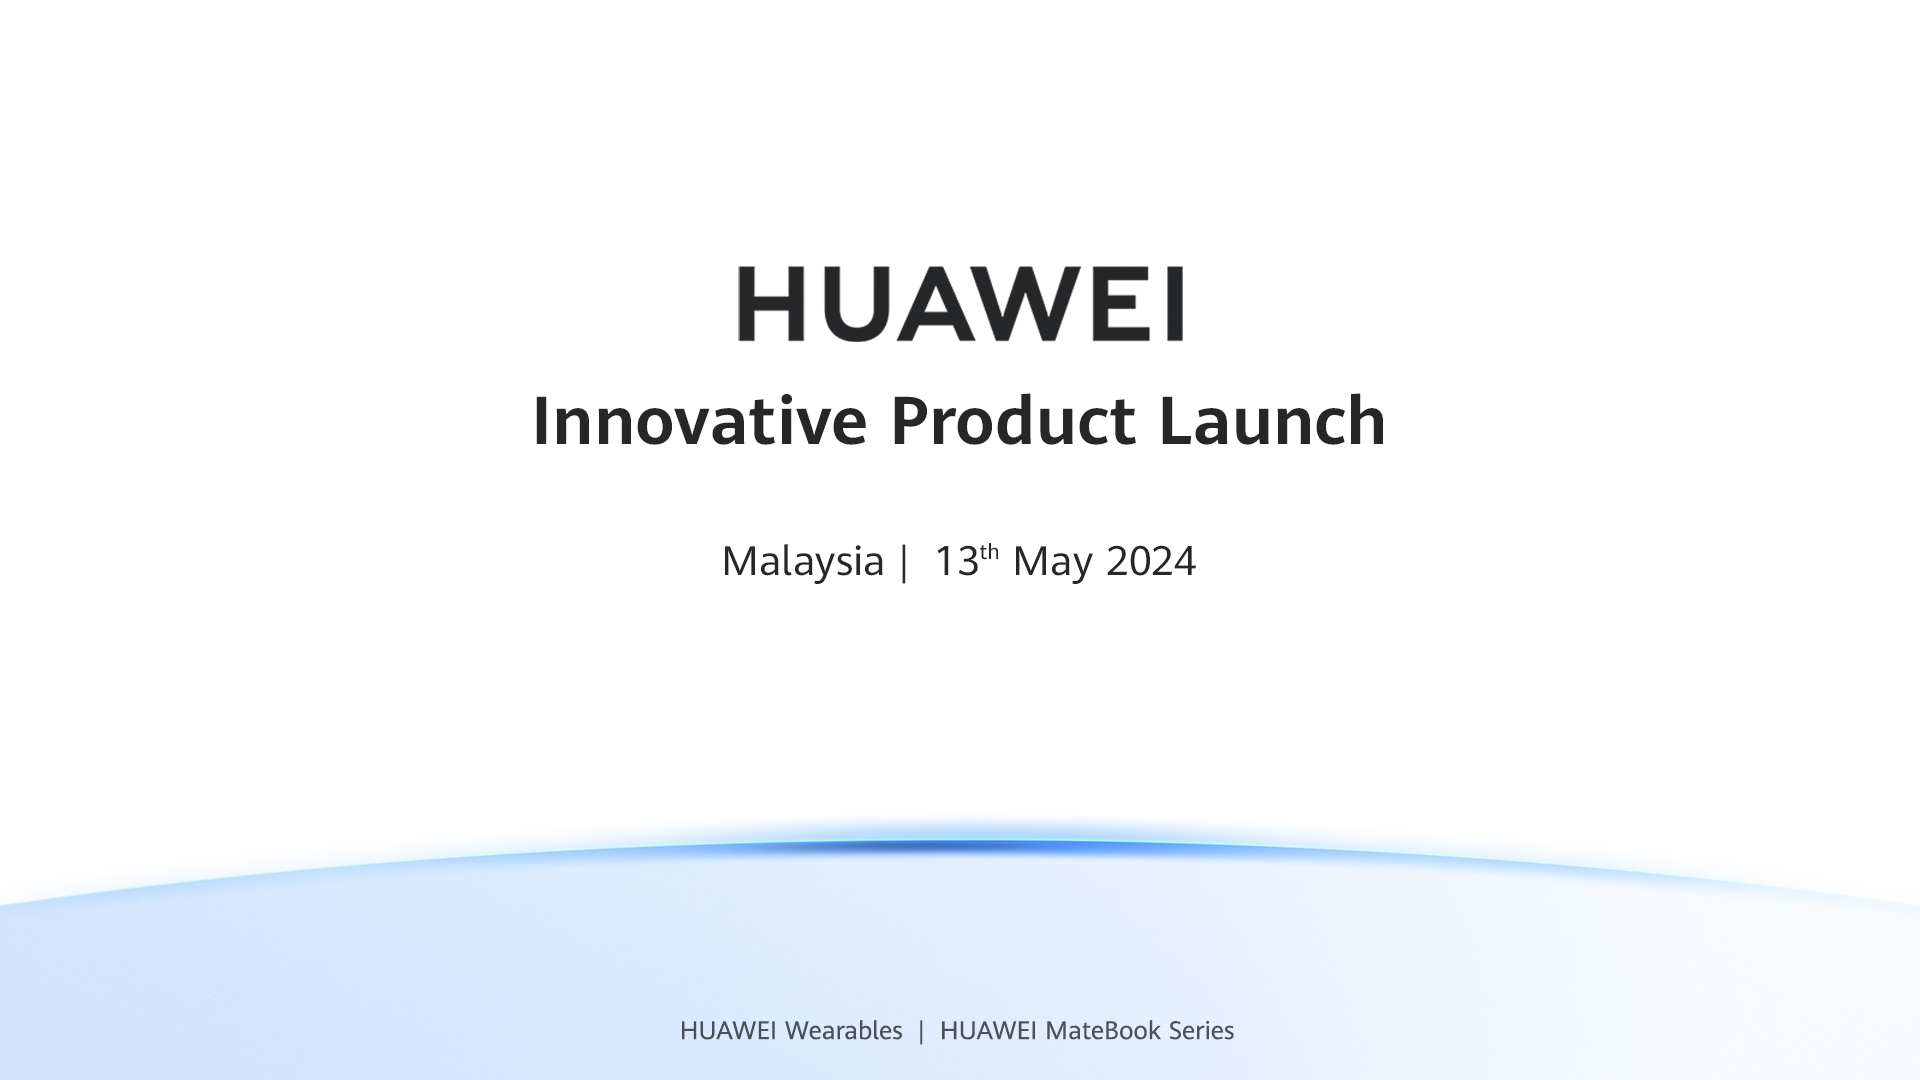 Huawei Malaysia